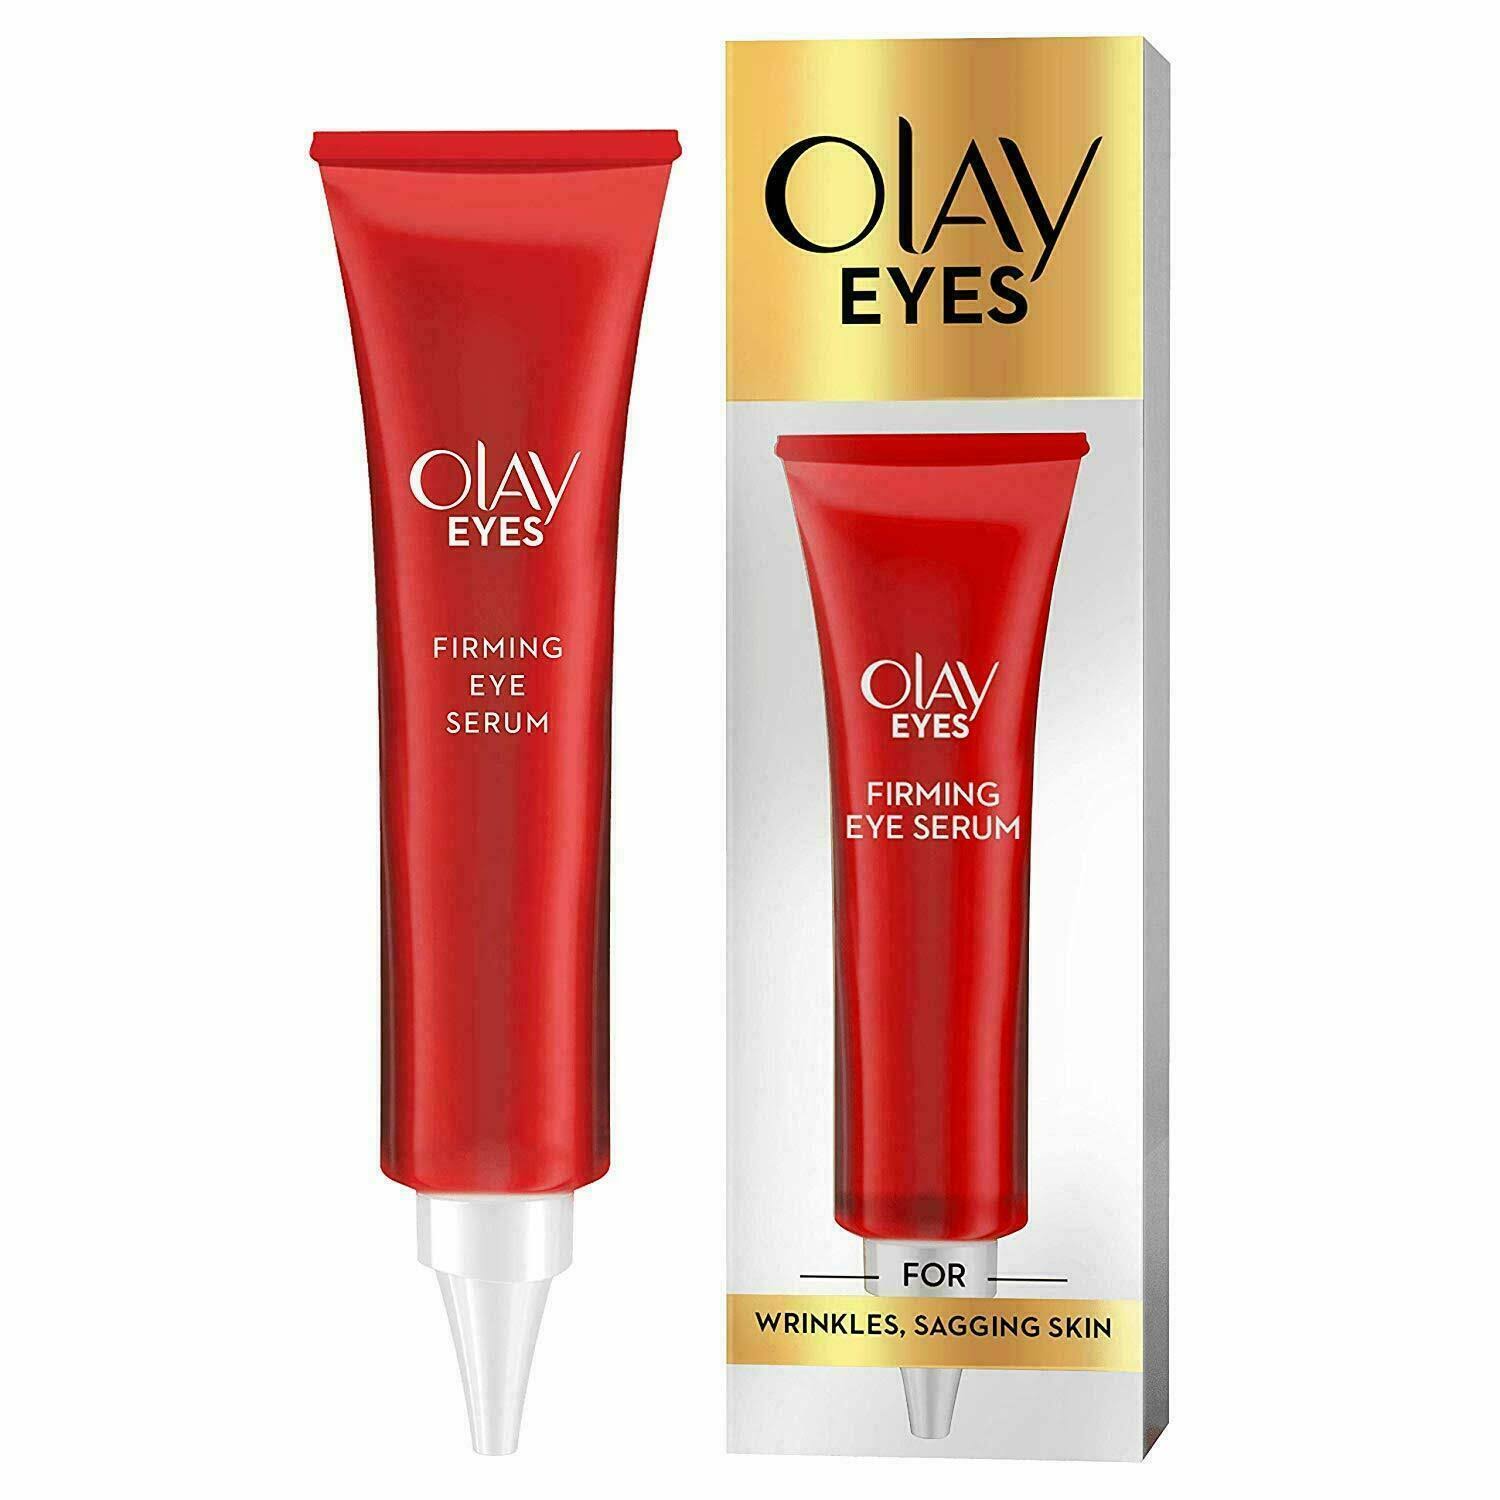 Olay Eyes Firming Eye Serum - 15ml